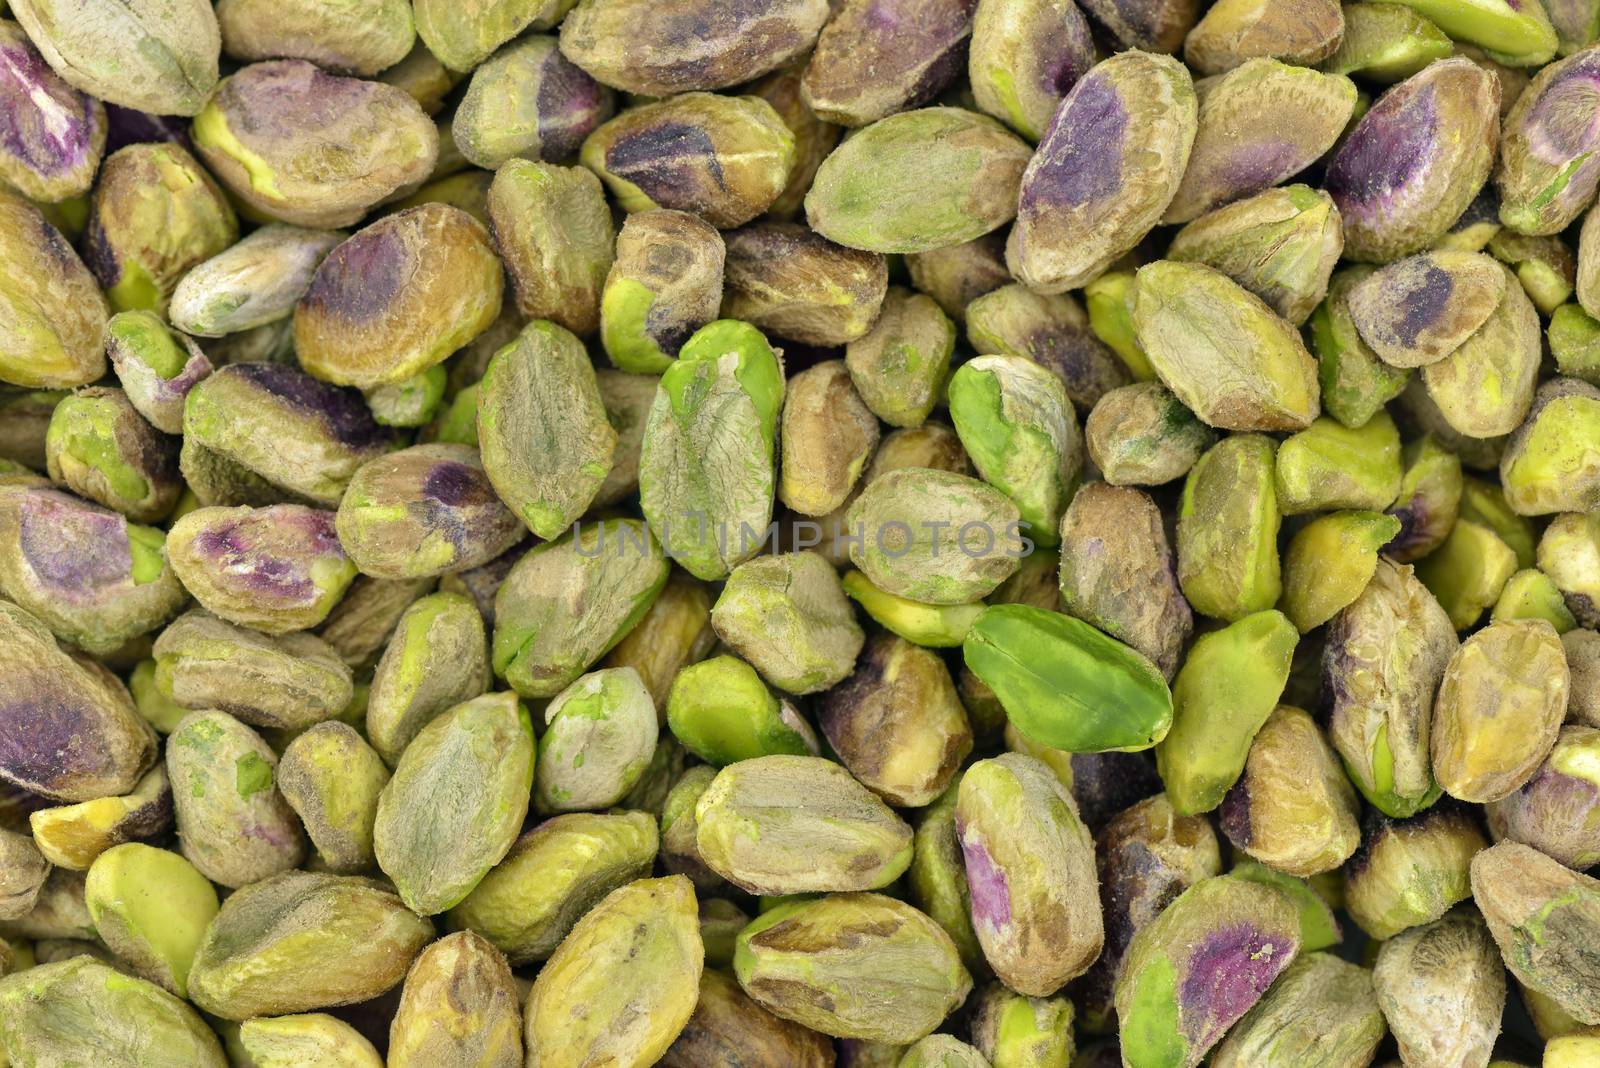 Unshelled pistachios by Hbak